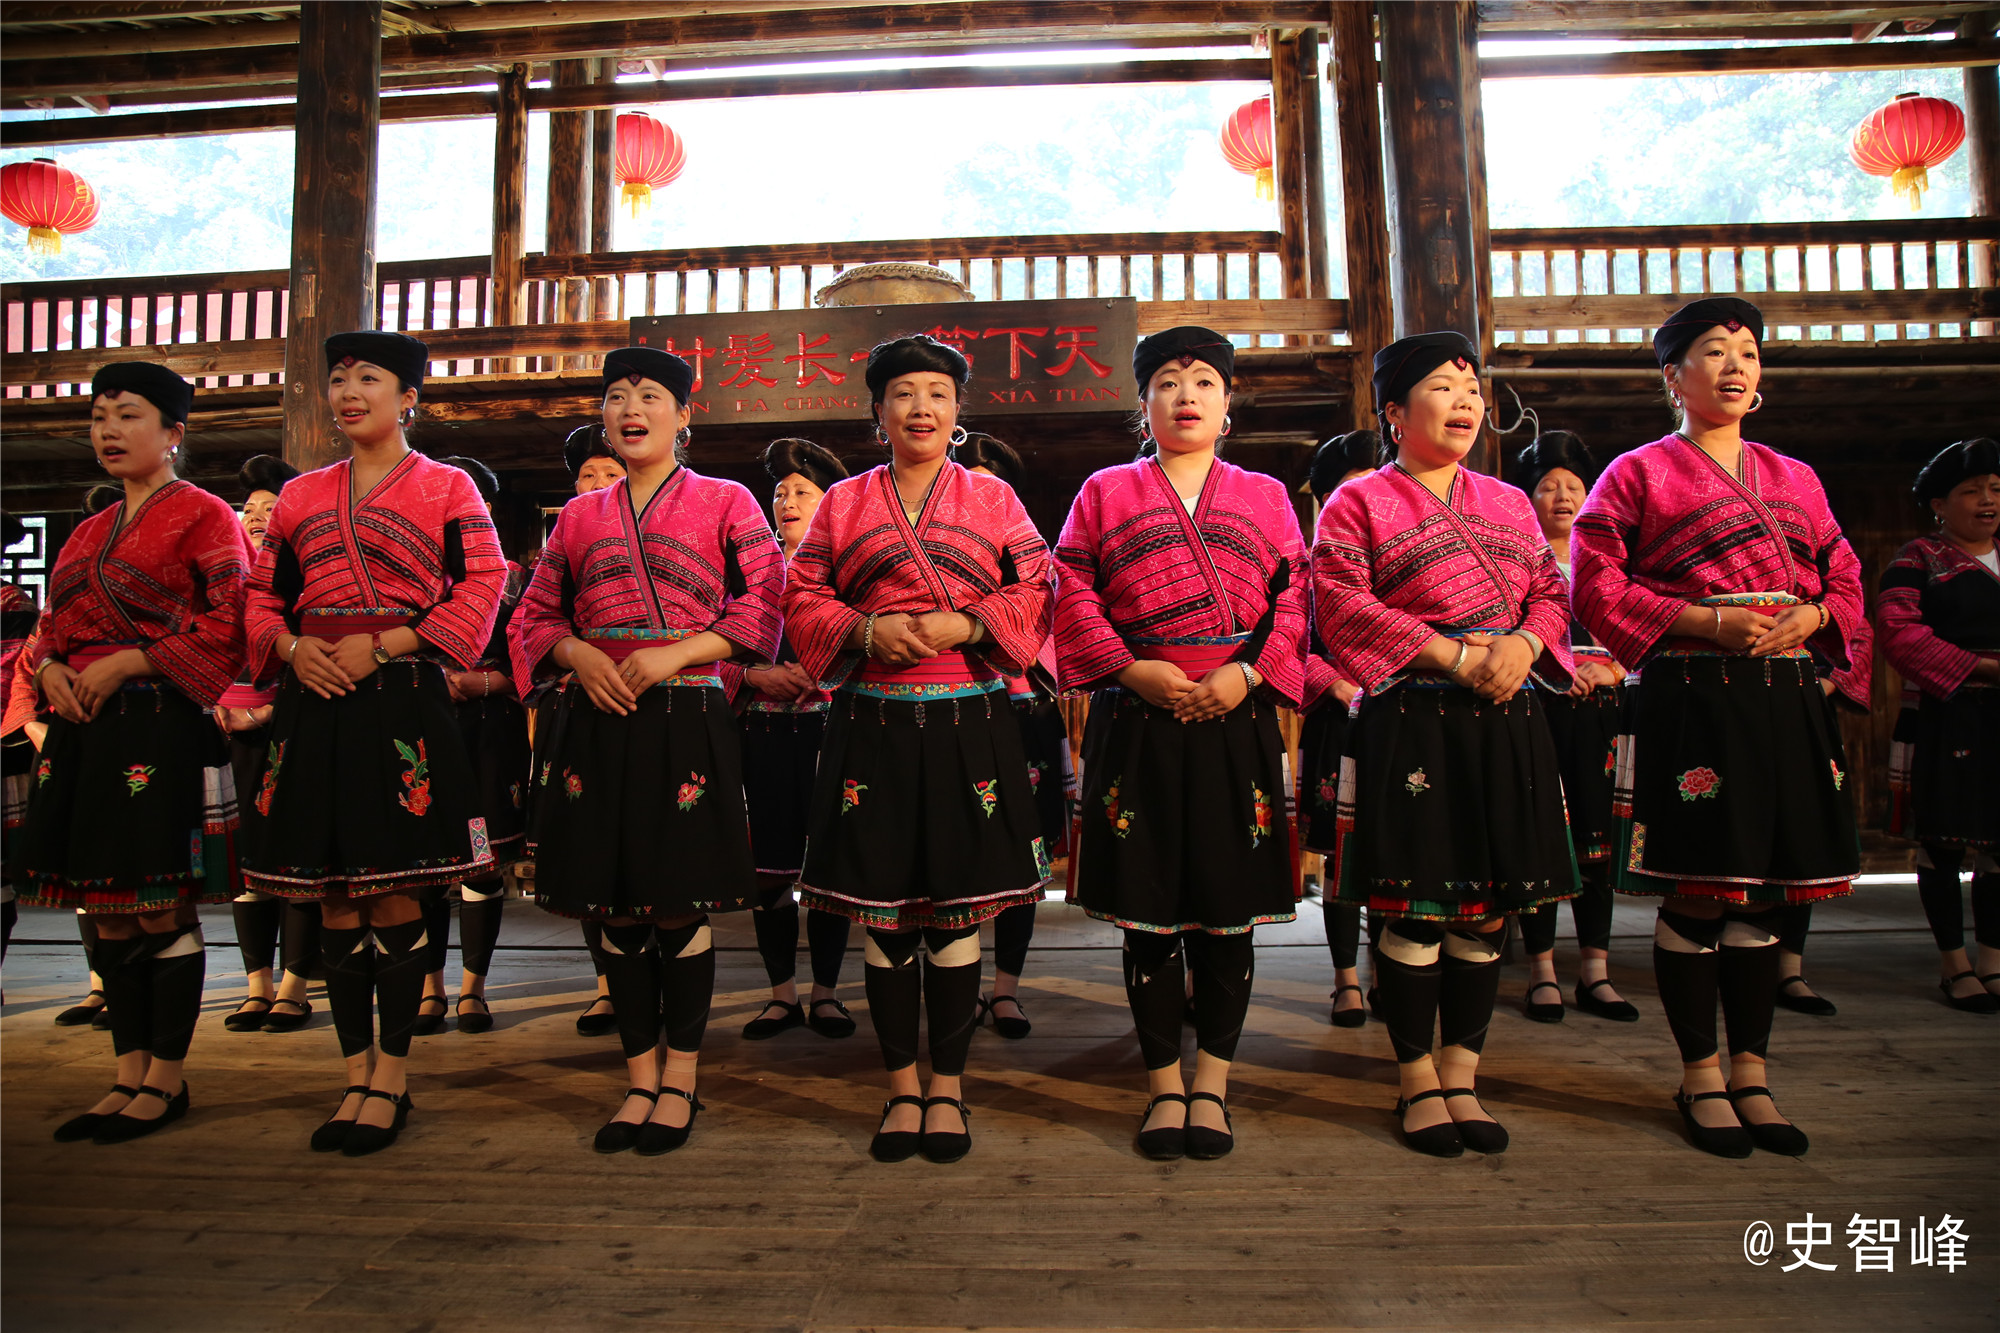 每年的龙脊红瑶晒衣节都吸引不少各地游客前来体验 龙胜各族自治县融媒体中心供图